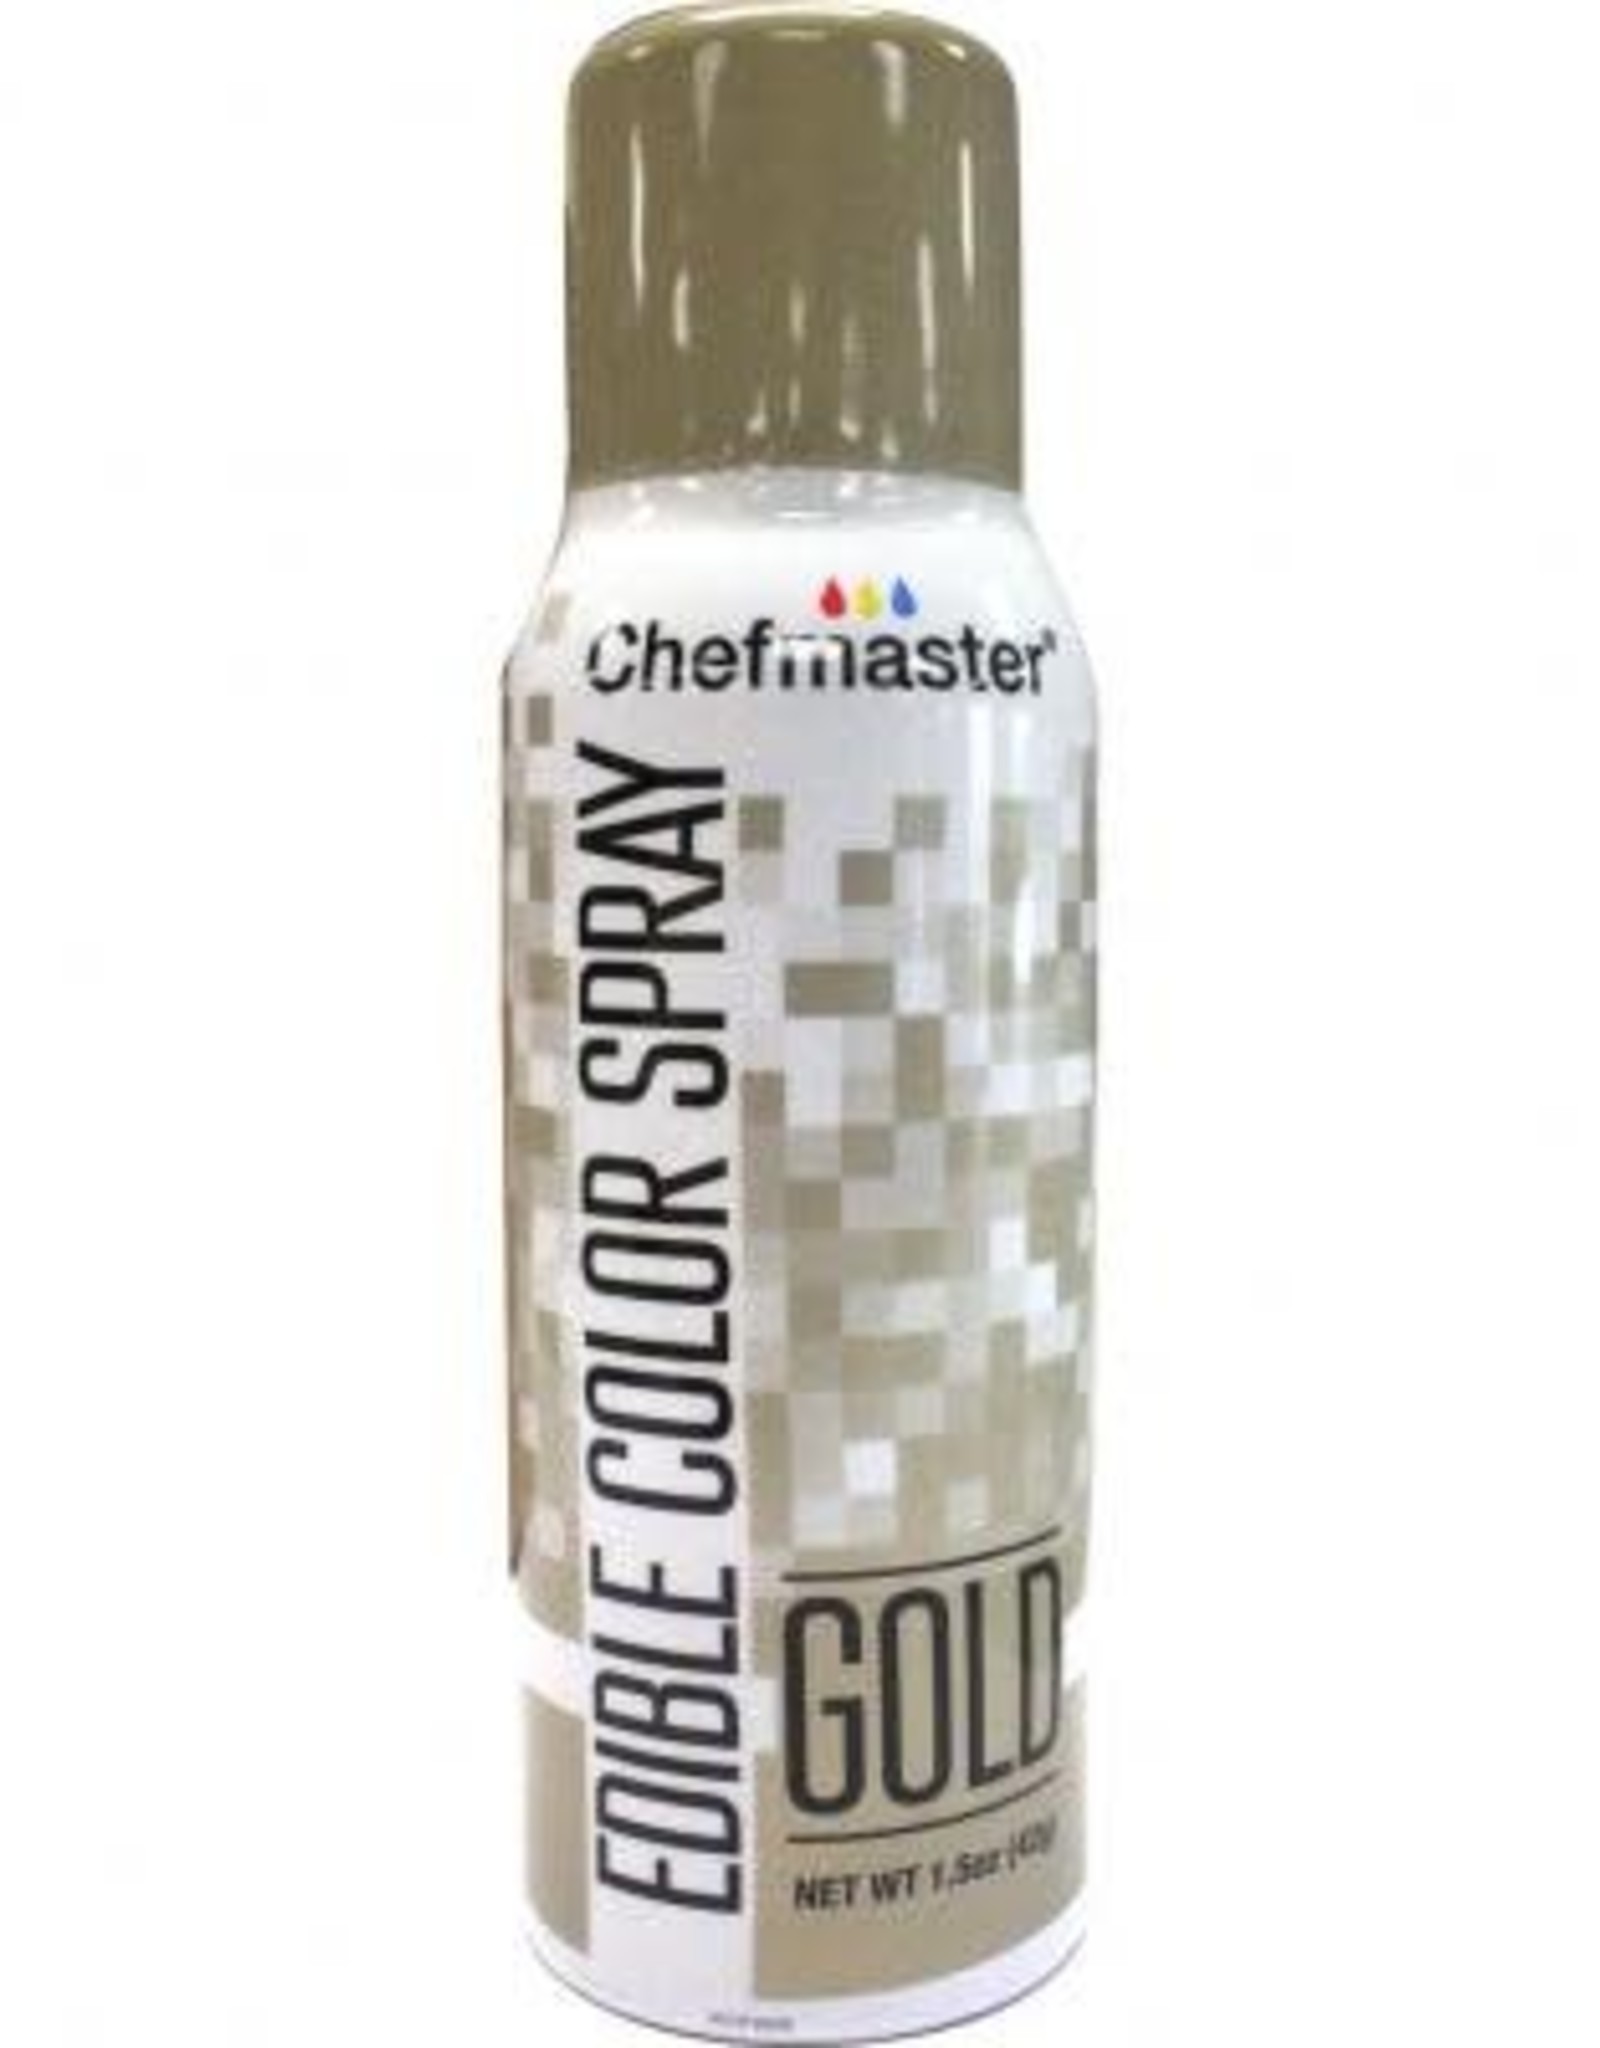 Chefmaster Edible Spray (Gold)